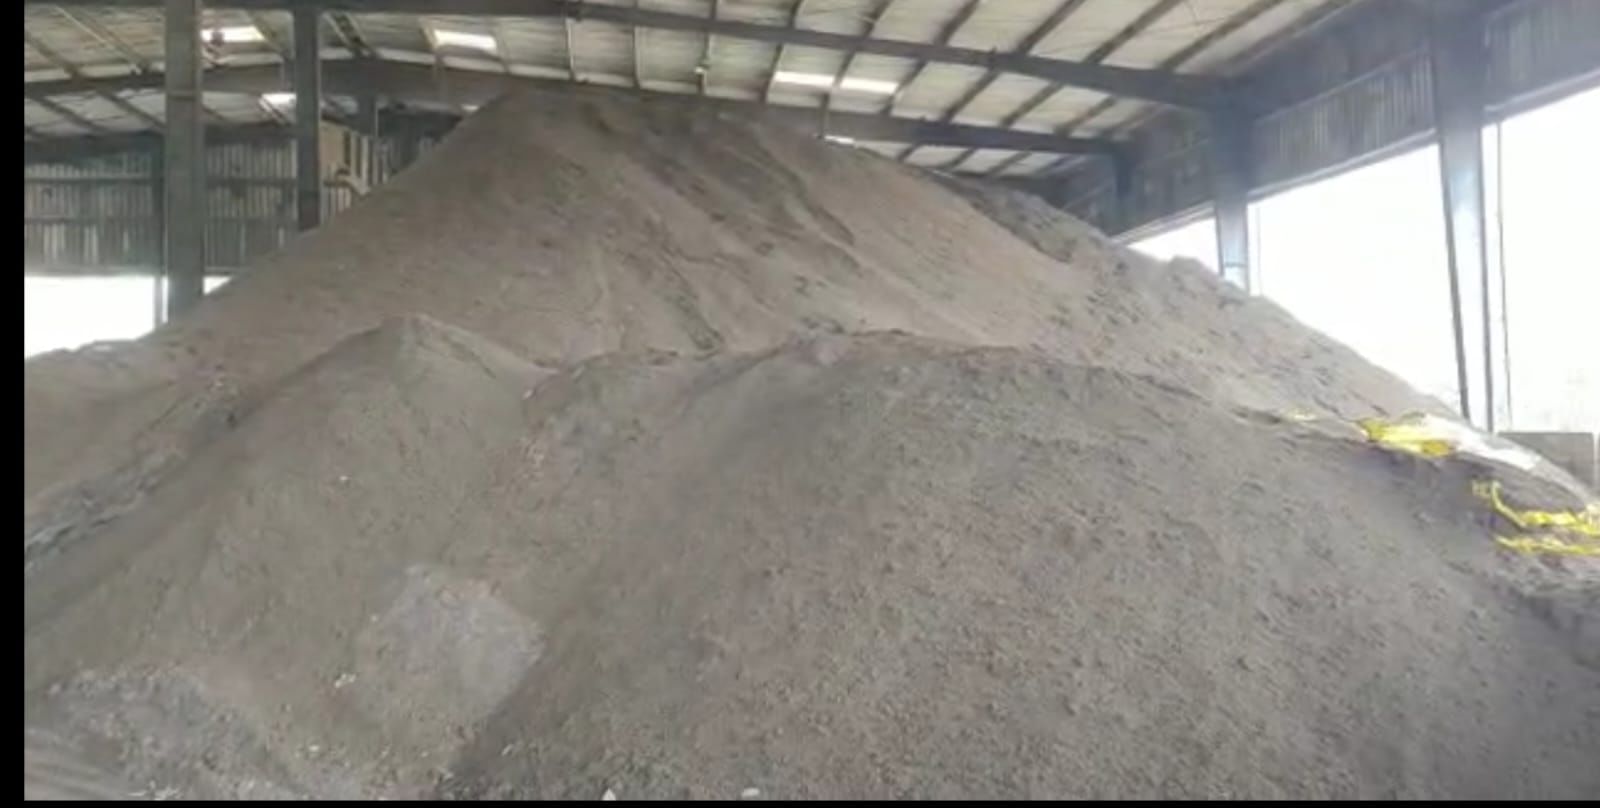 केडीएमसीत कचऱ्यापासून 10 हजार मॅट्रिक टन खत निर्मिती, सोलापूर नाशिक पुण्यातून मागणी